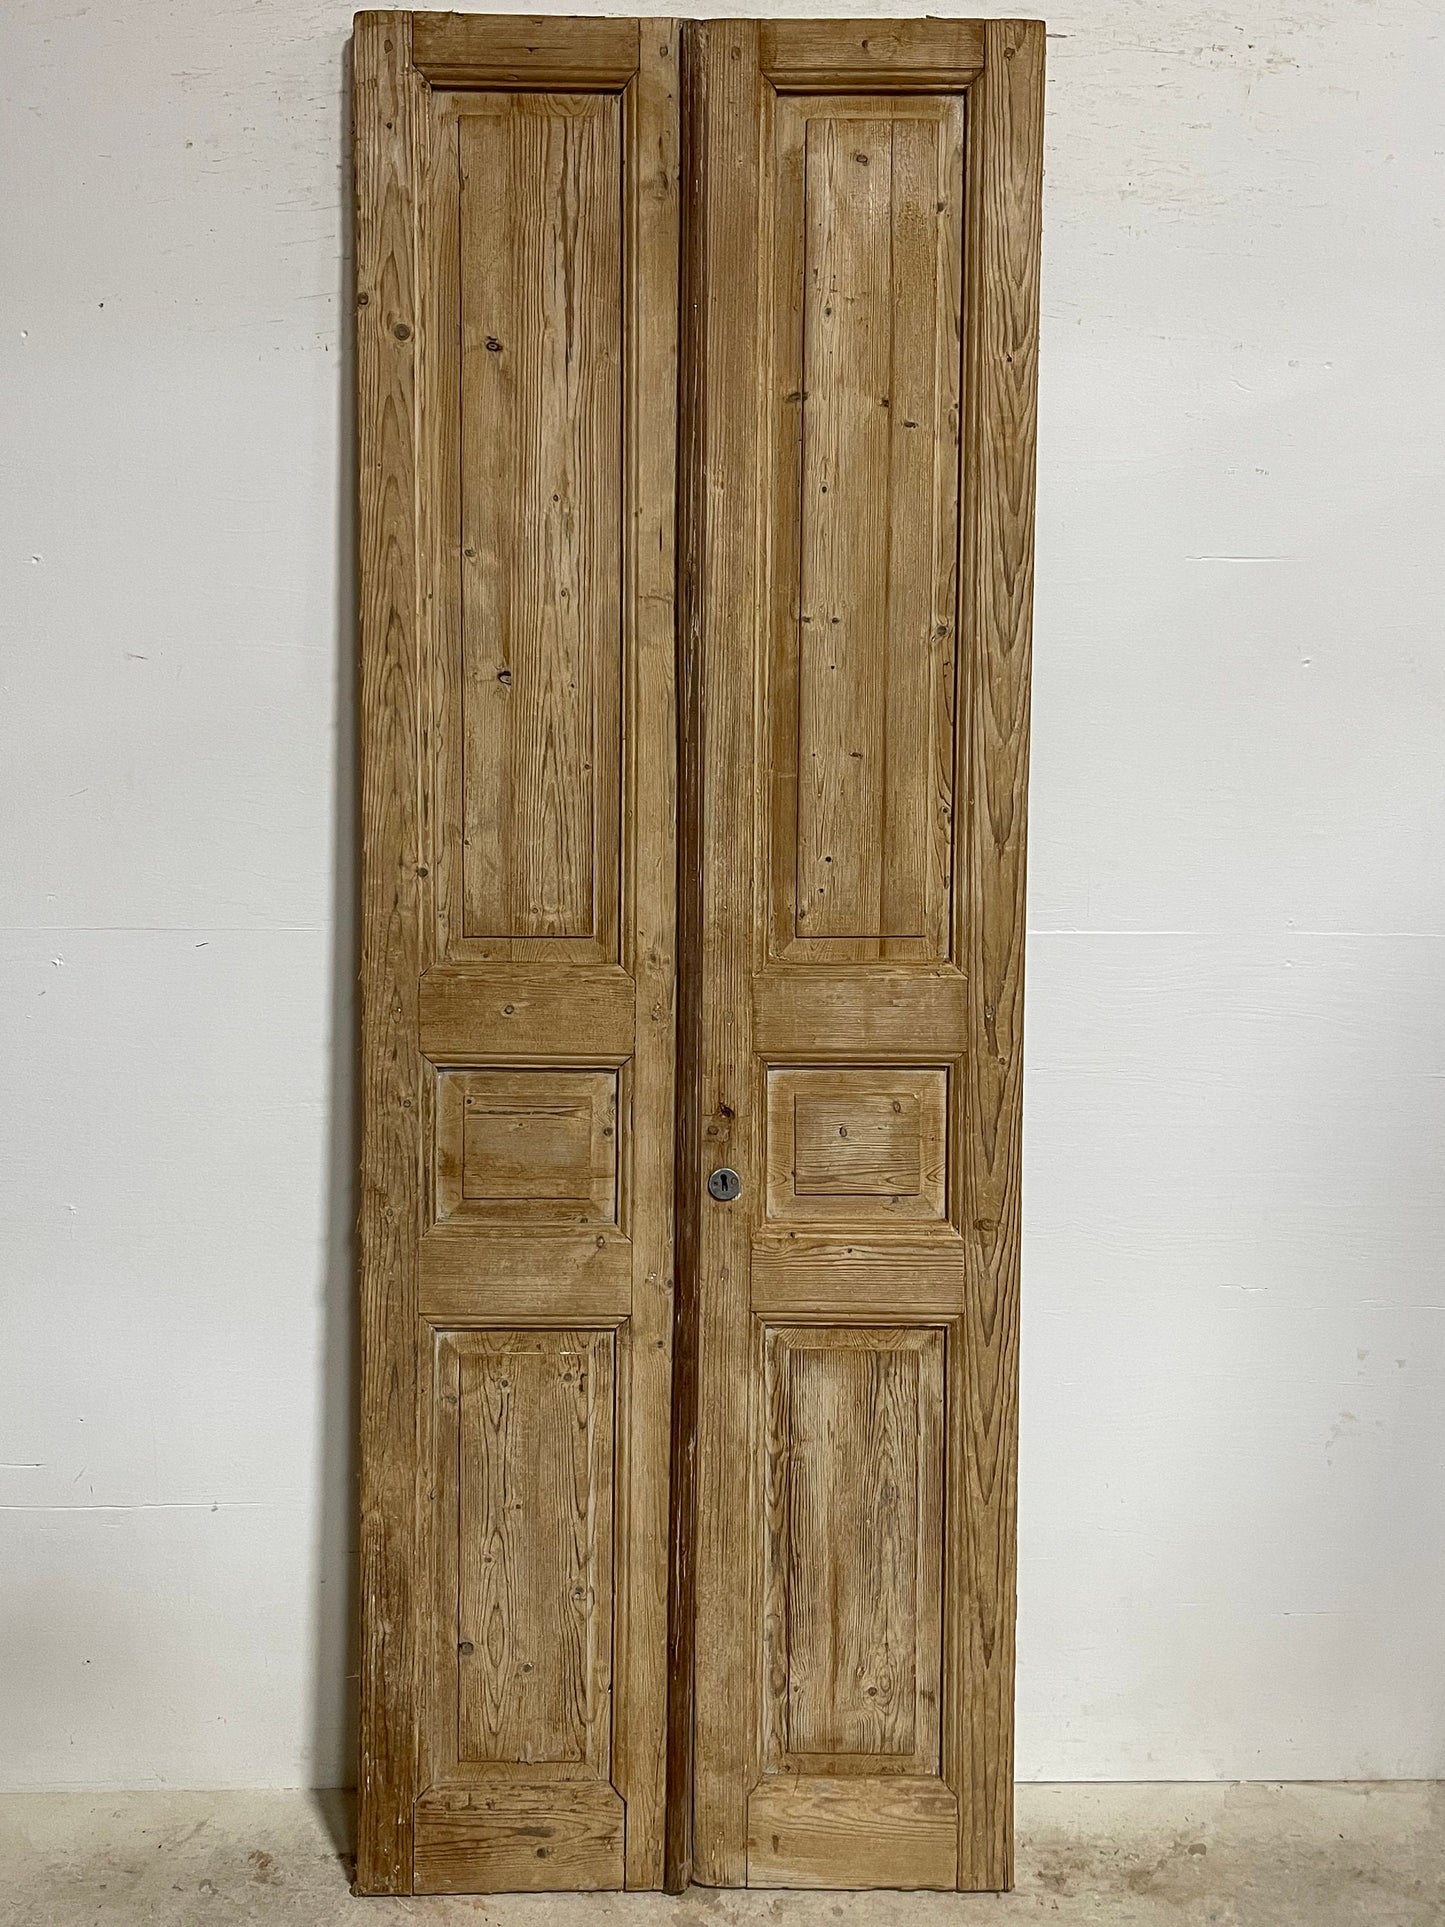 Antique French panel doors (91.5x32.75) I080s